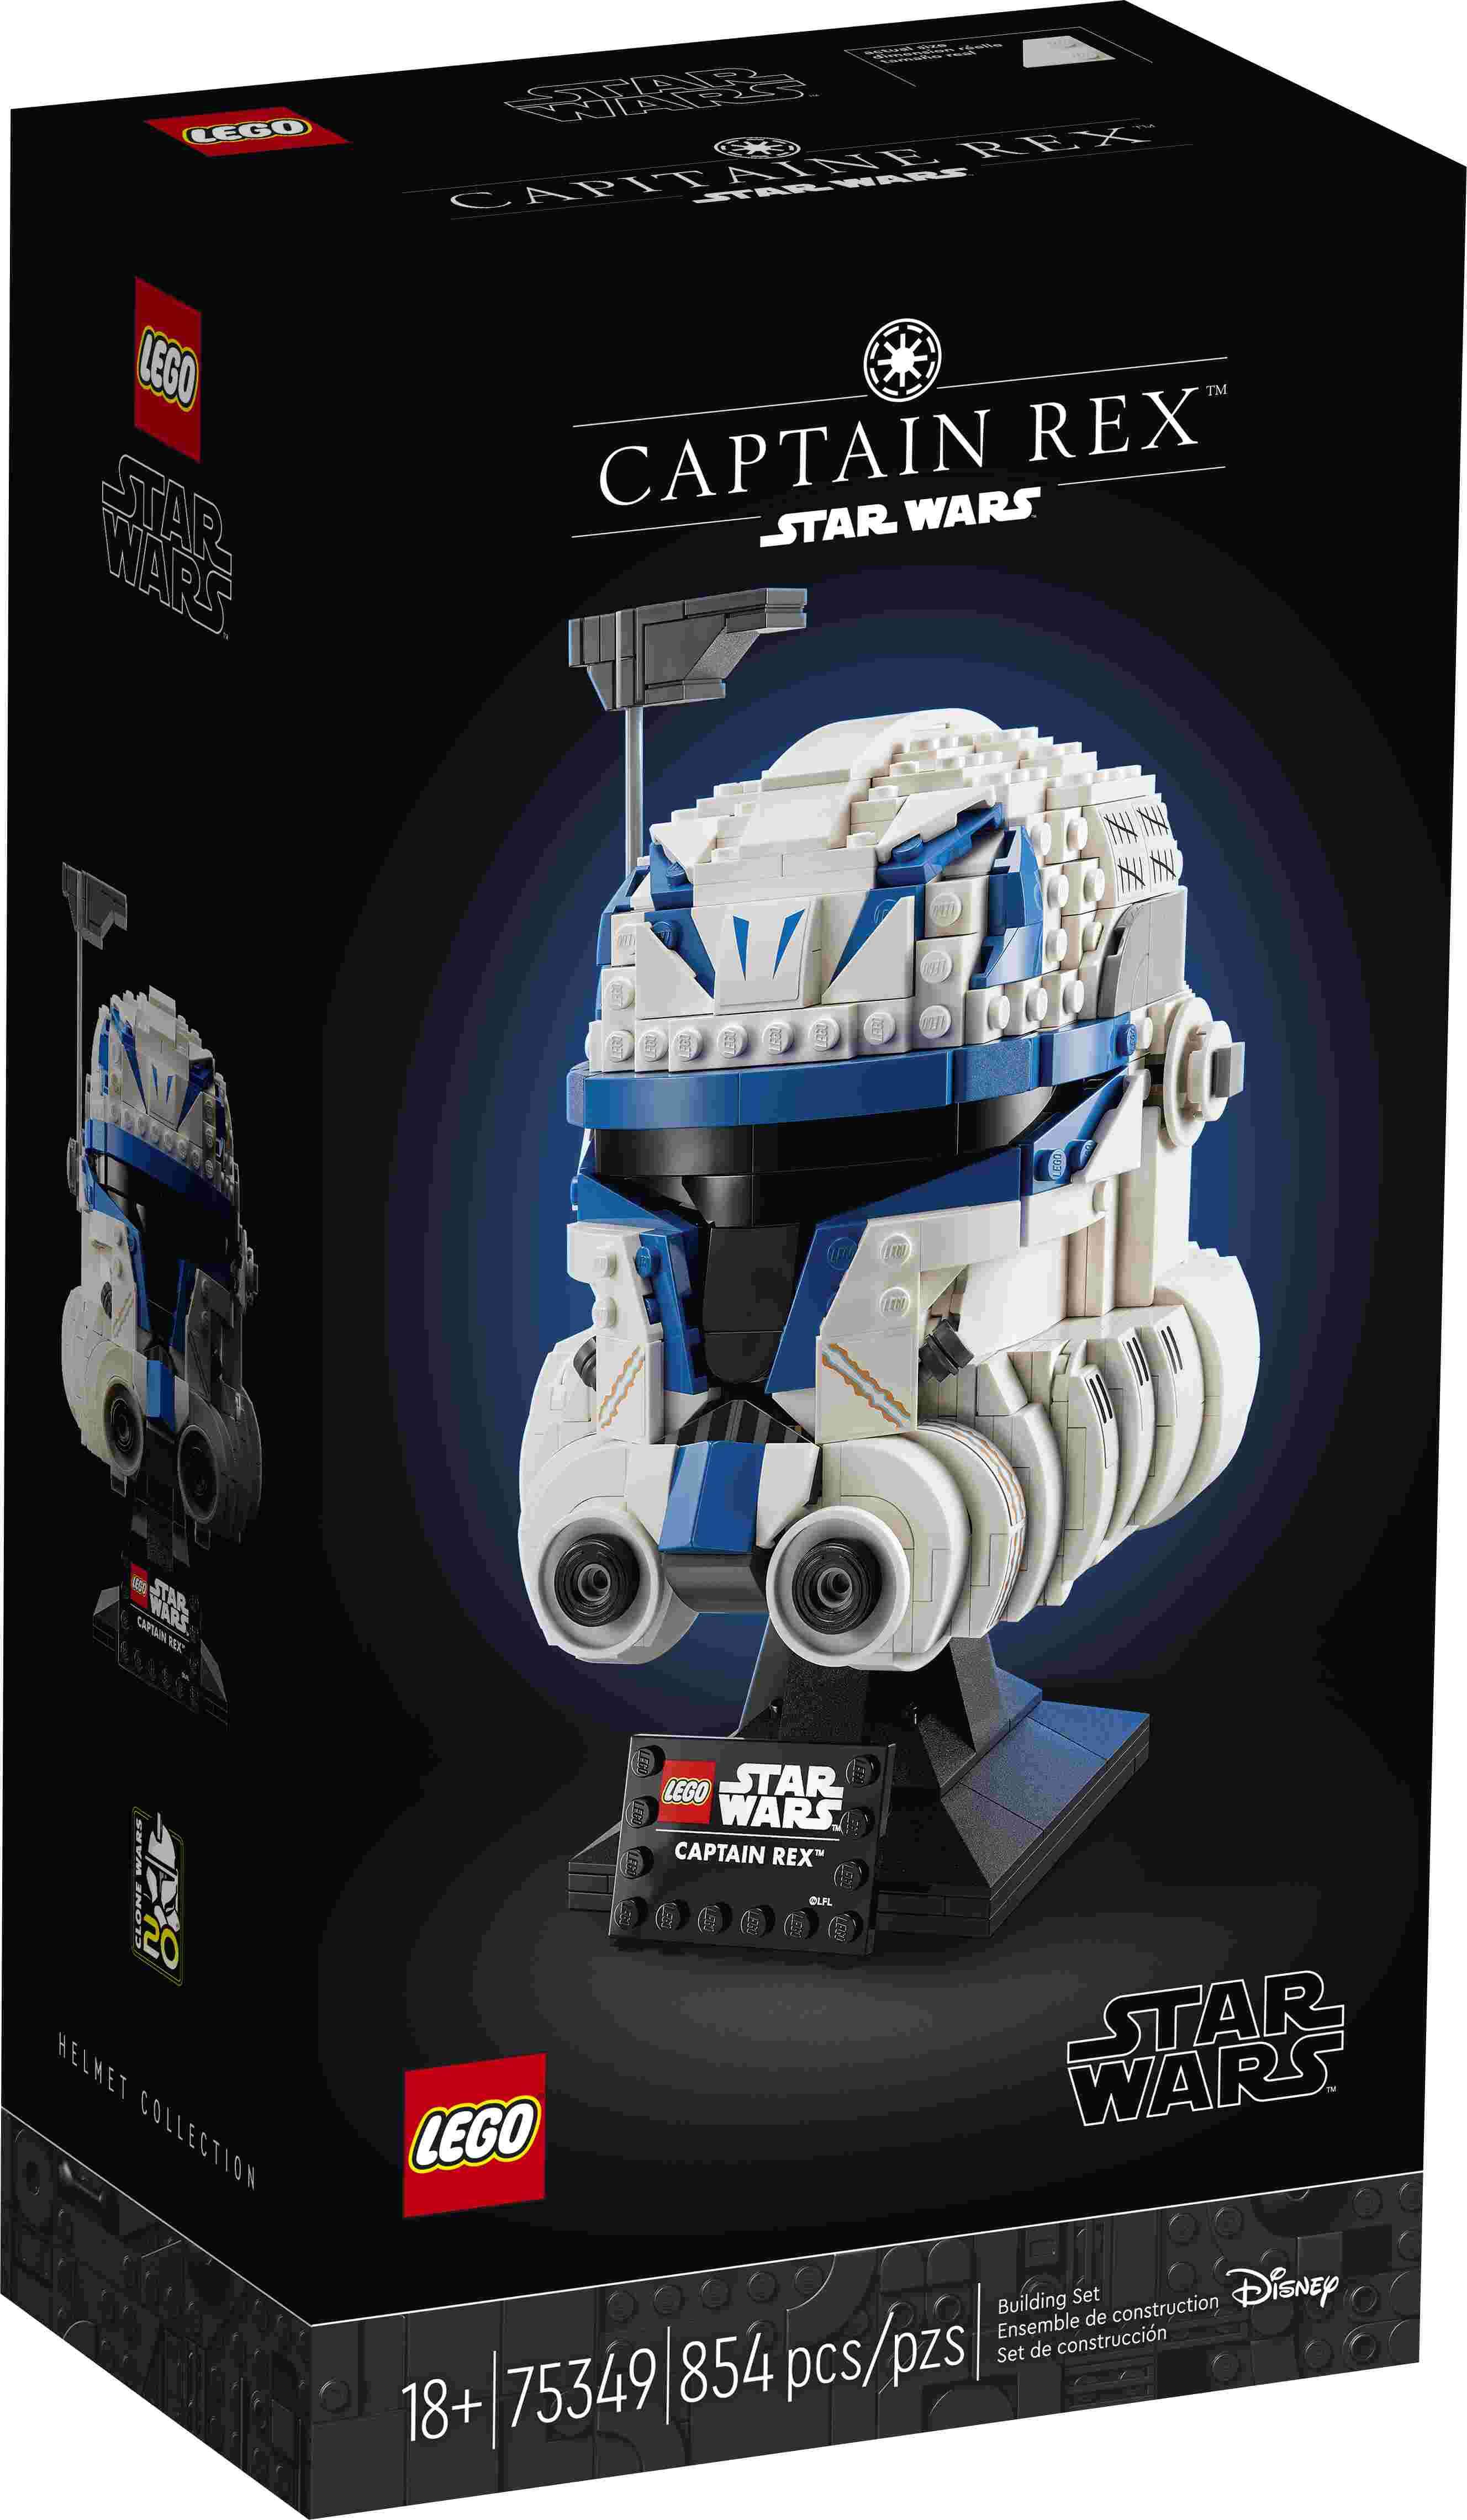 LEGO 75349 Star Wars Captain Rex Helm, Ständer, Namensschild, Ausstellungsstück